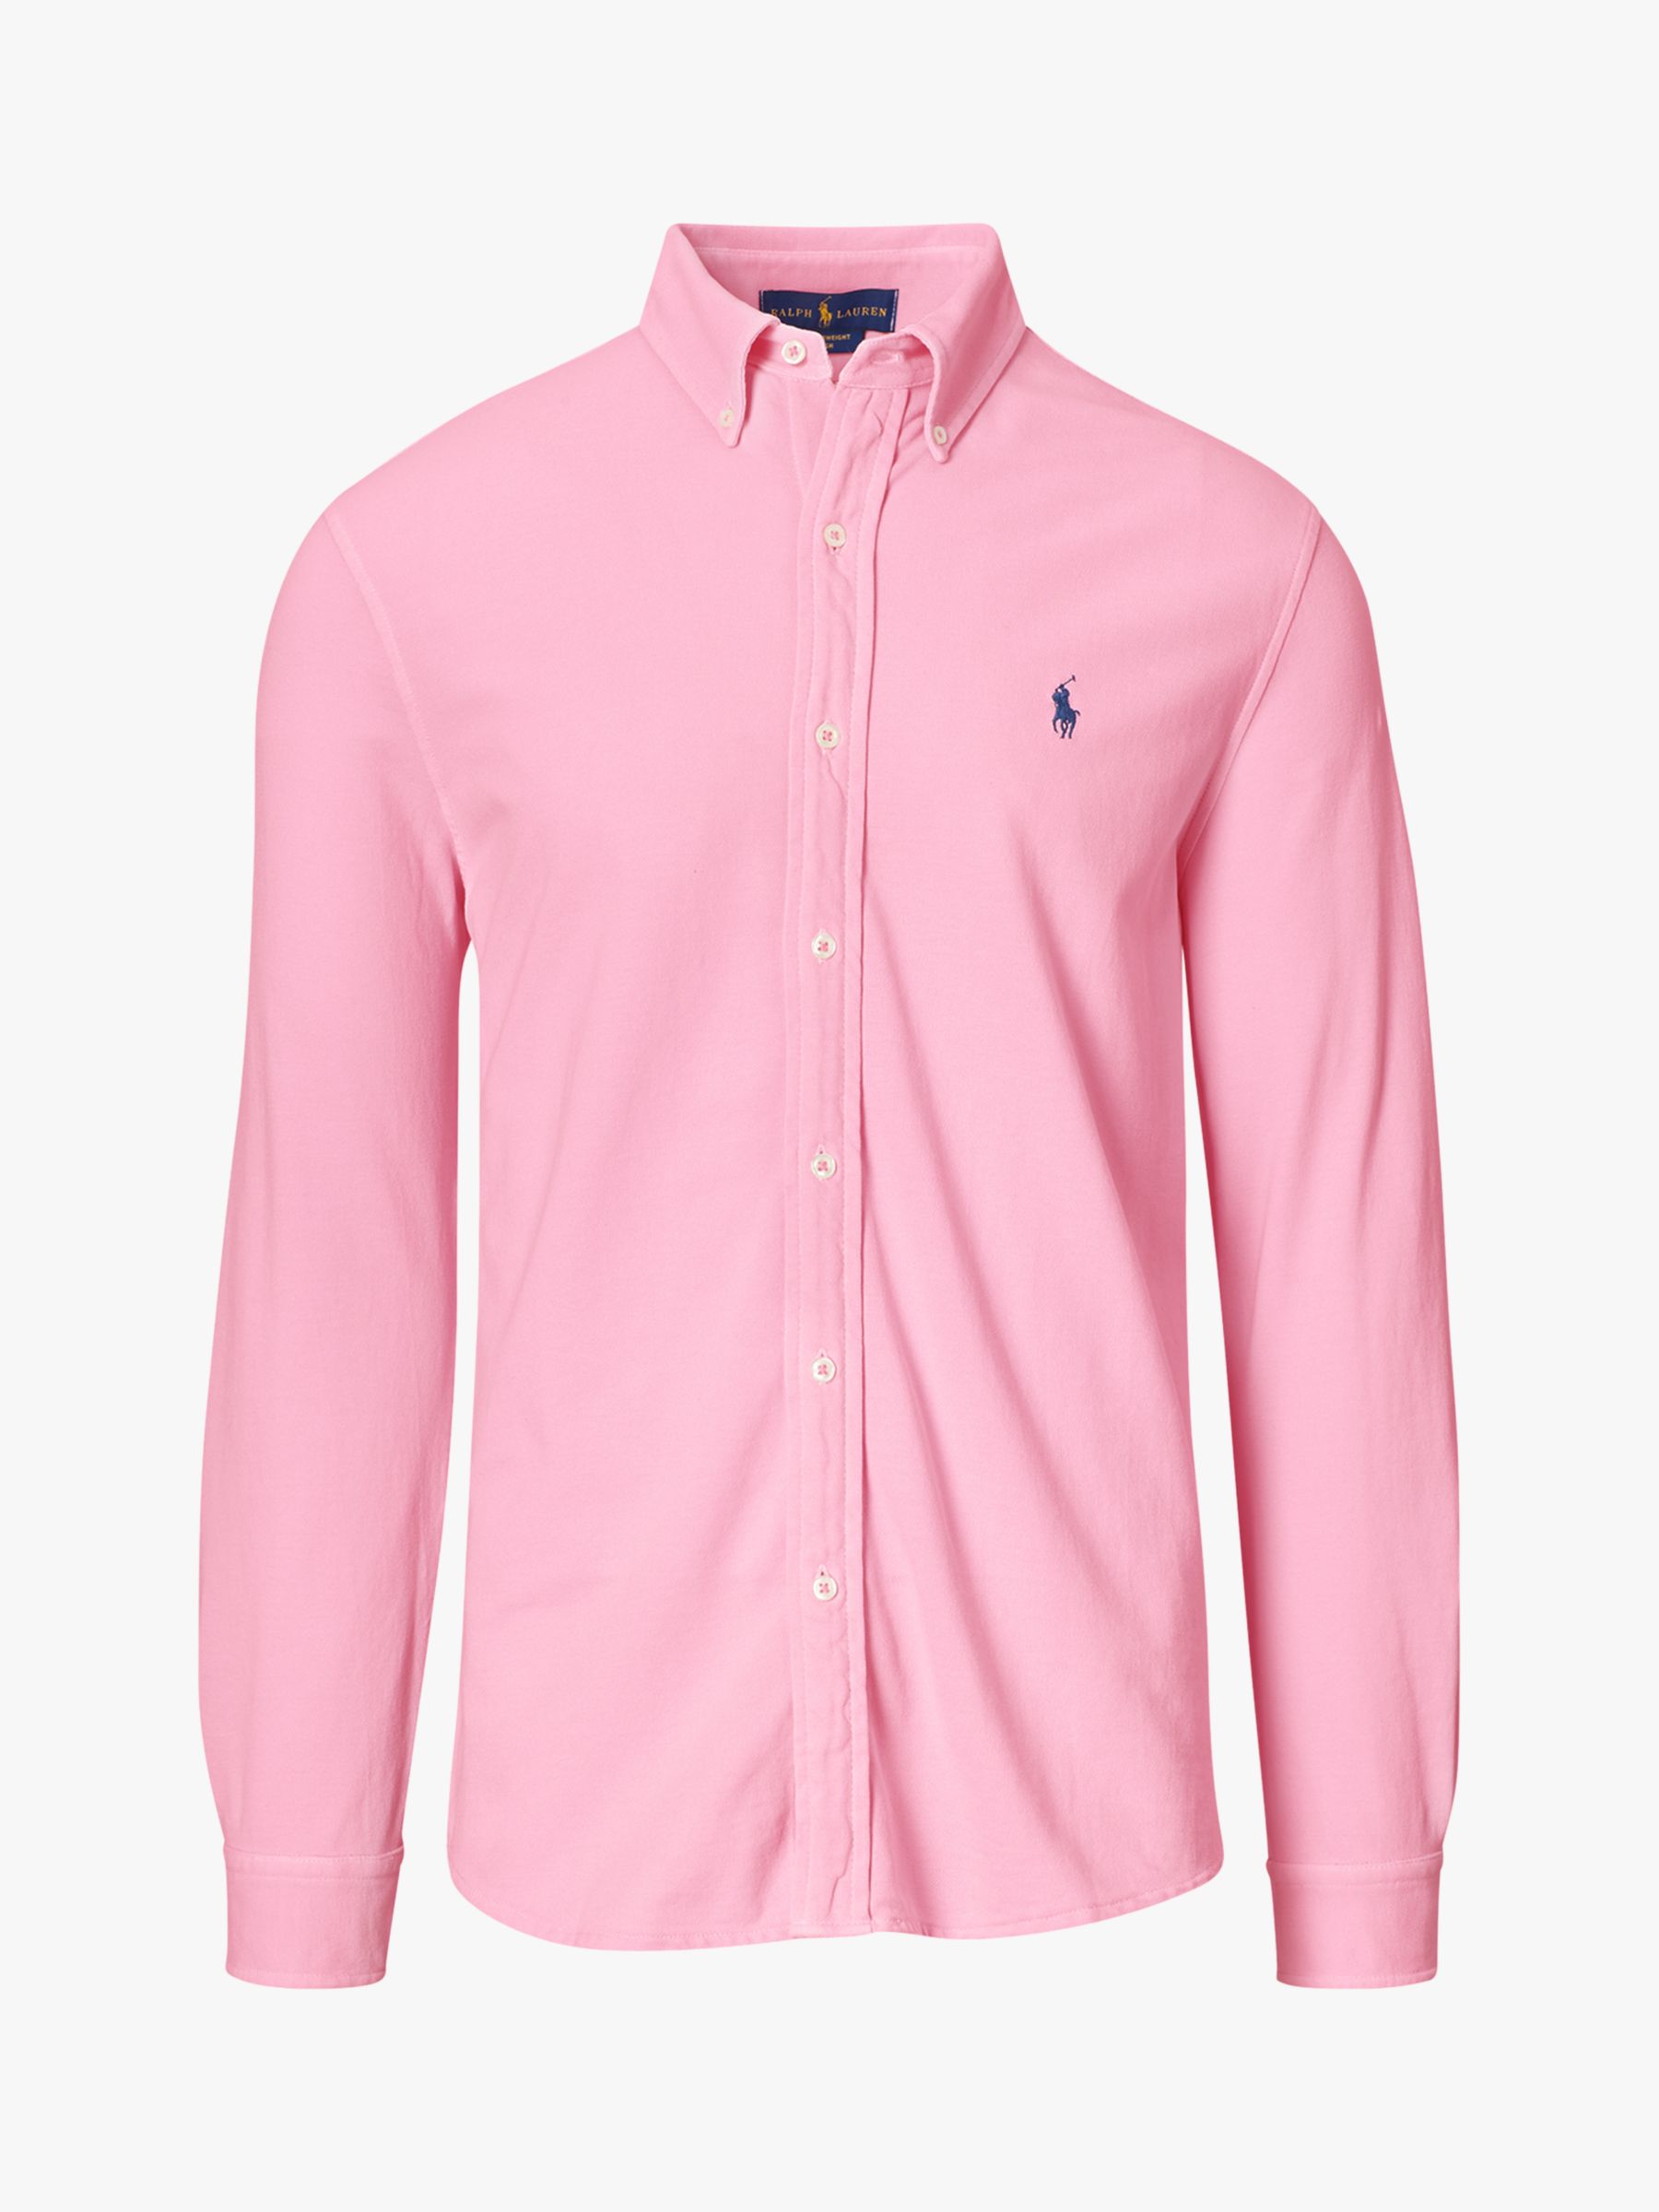 Polo Ralph Lauren Featherweight Mesh Shirt, Carmel Pink, M